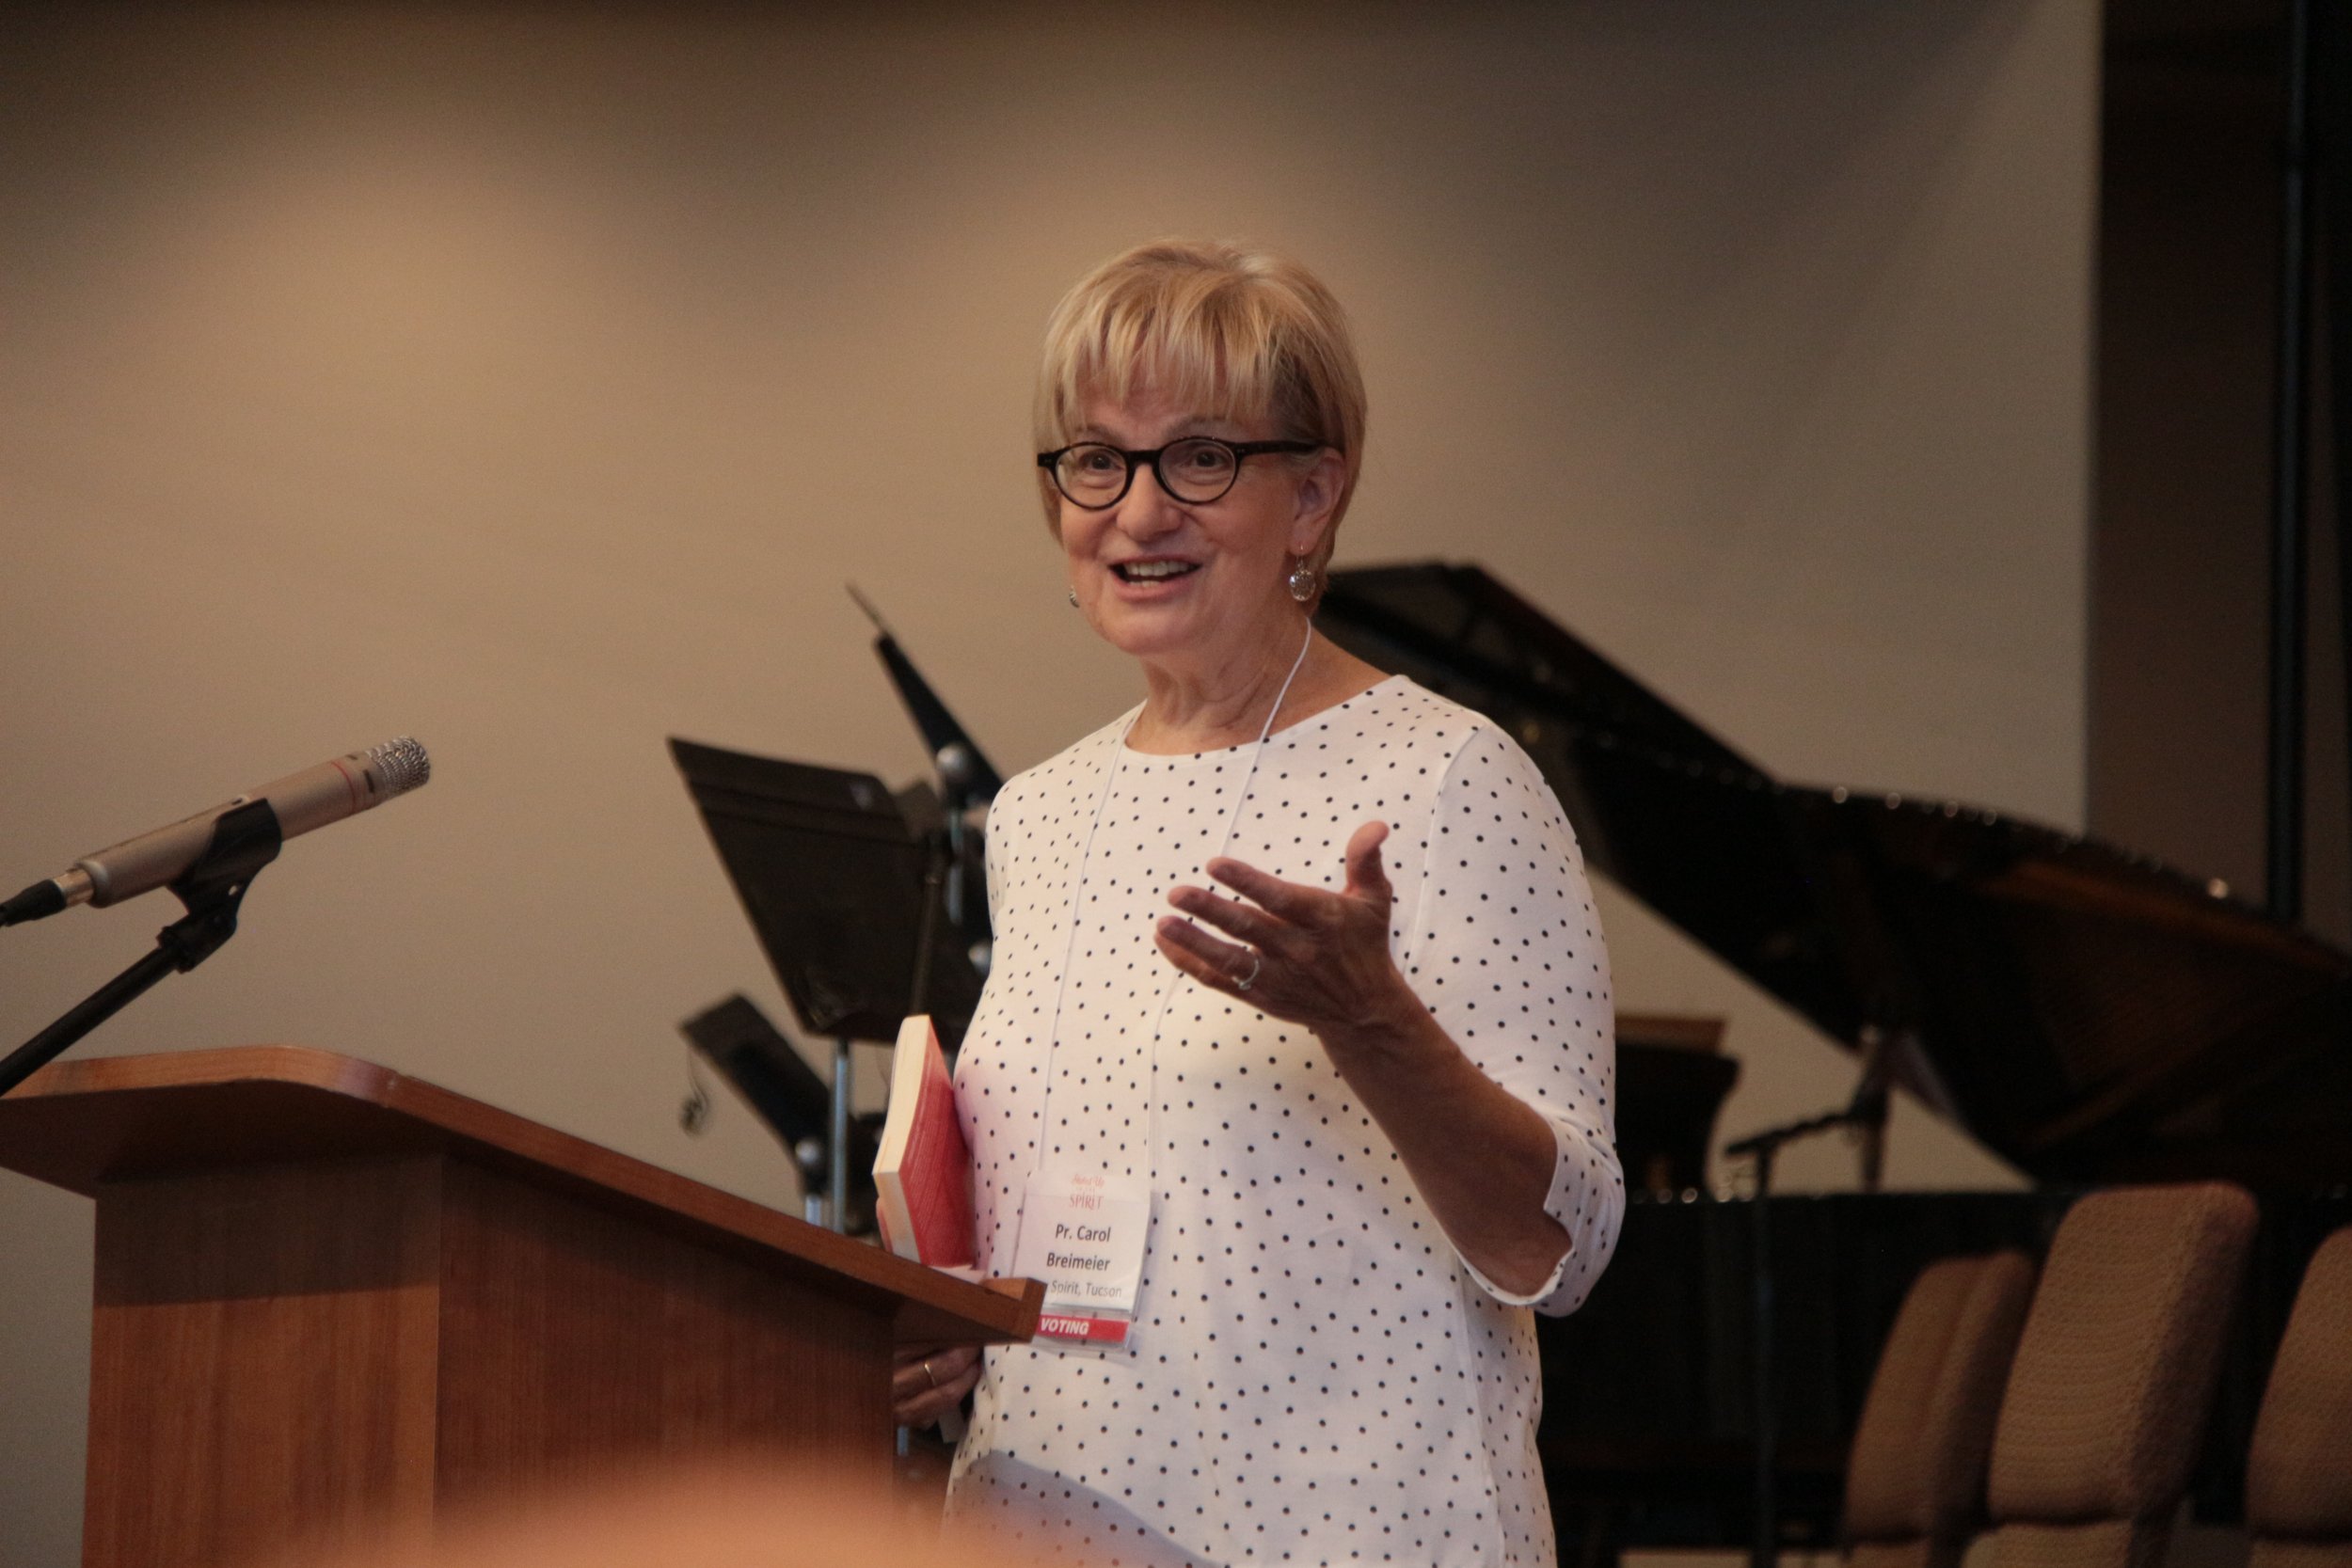 Pastor Carol Breimeier